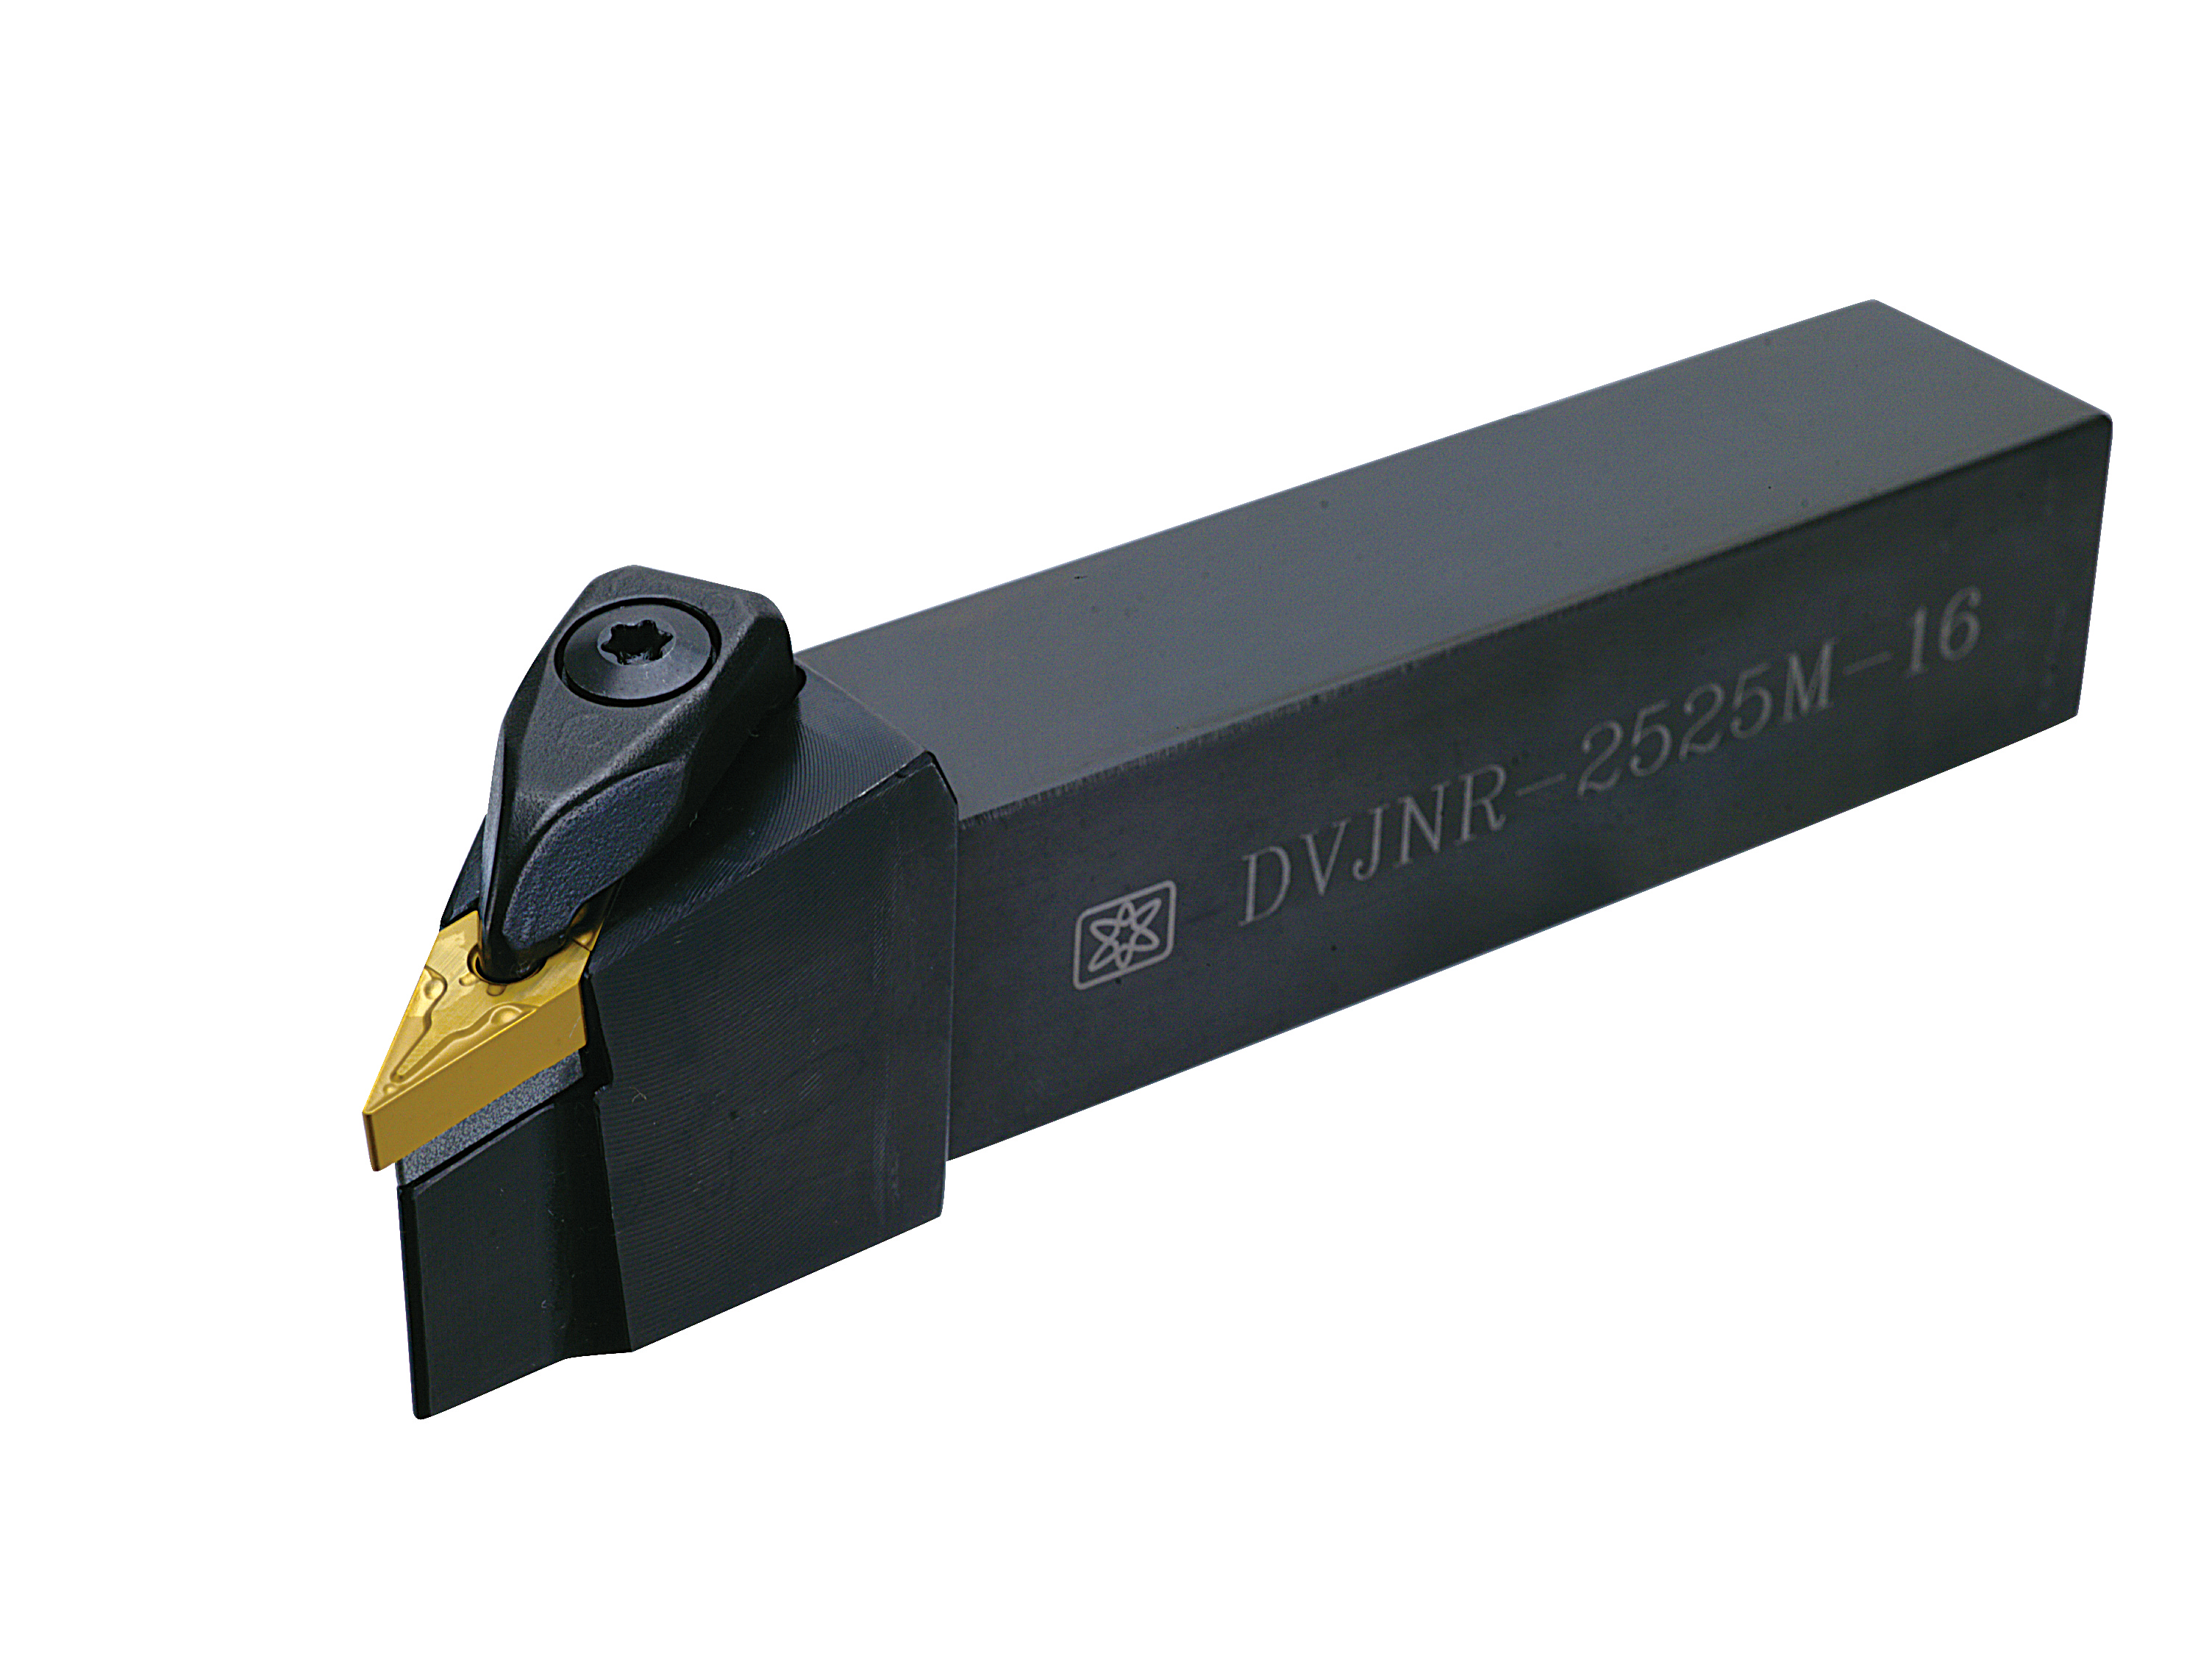 Catalog|DVJNR (VNMG1604) External Turning Tool Holder